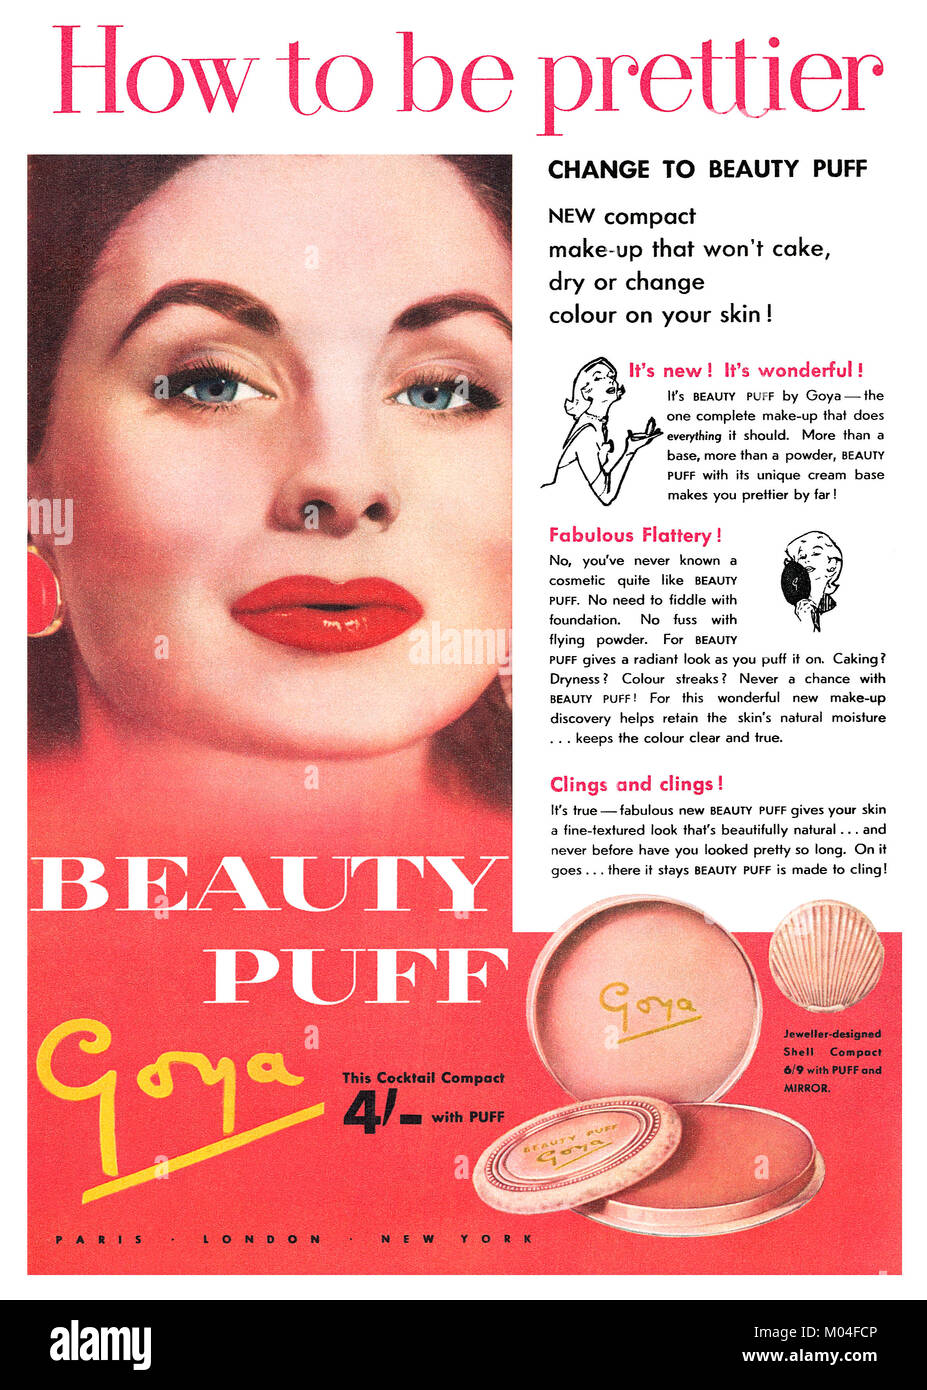 1956 La publicité pour la bouffée de beauté maquillage compact Goya. Banque D'Images